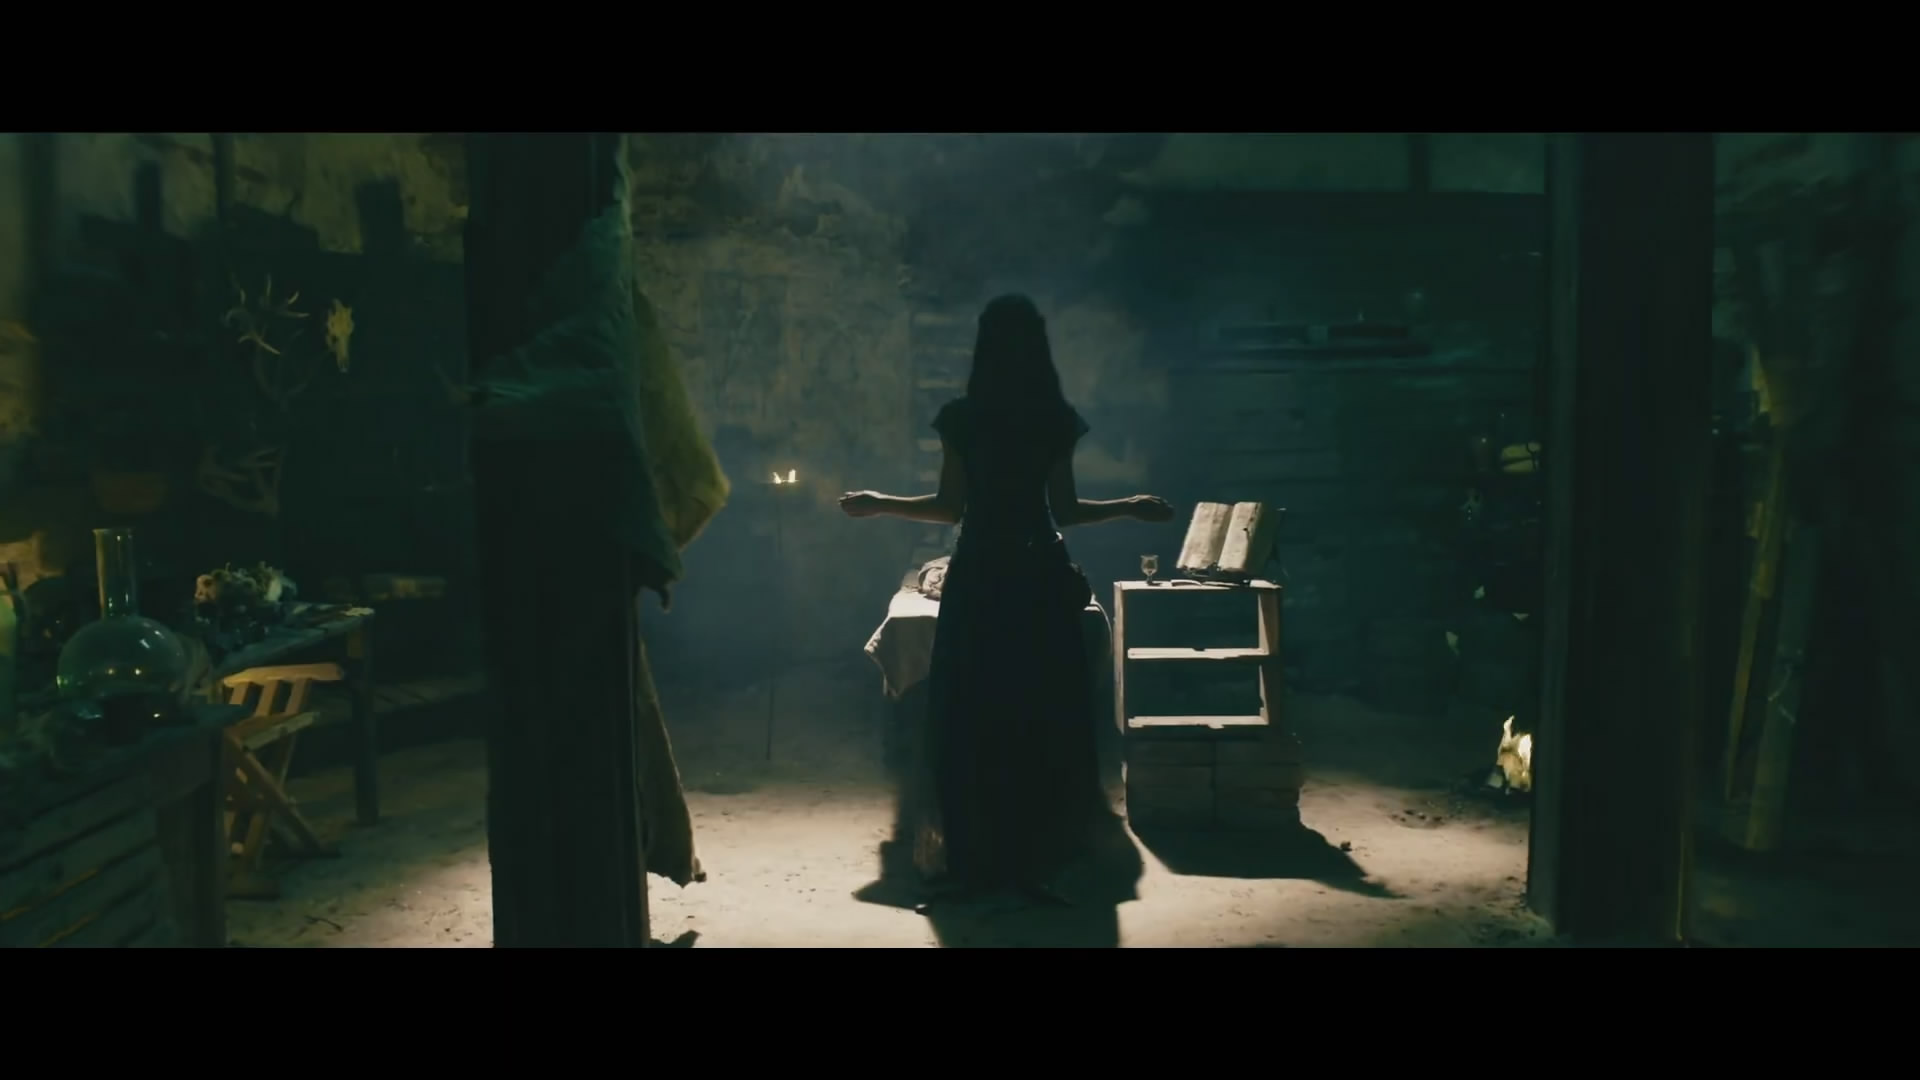 粉絲版《巫師》電影新預告片 影片將於11月30日上映